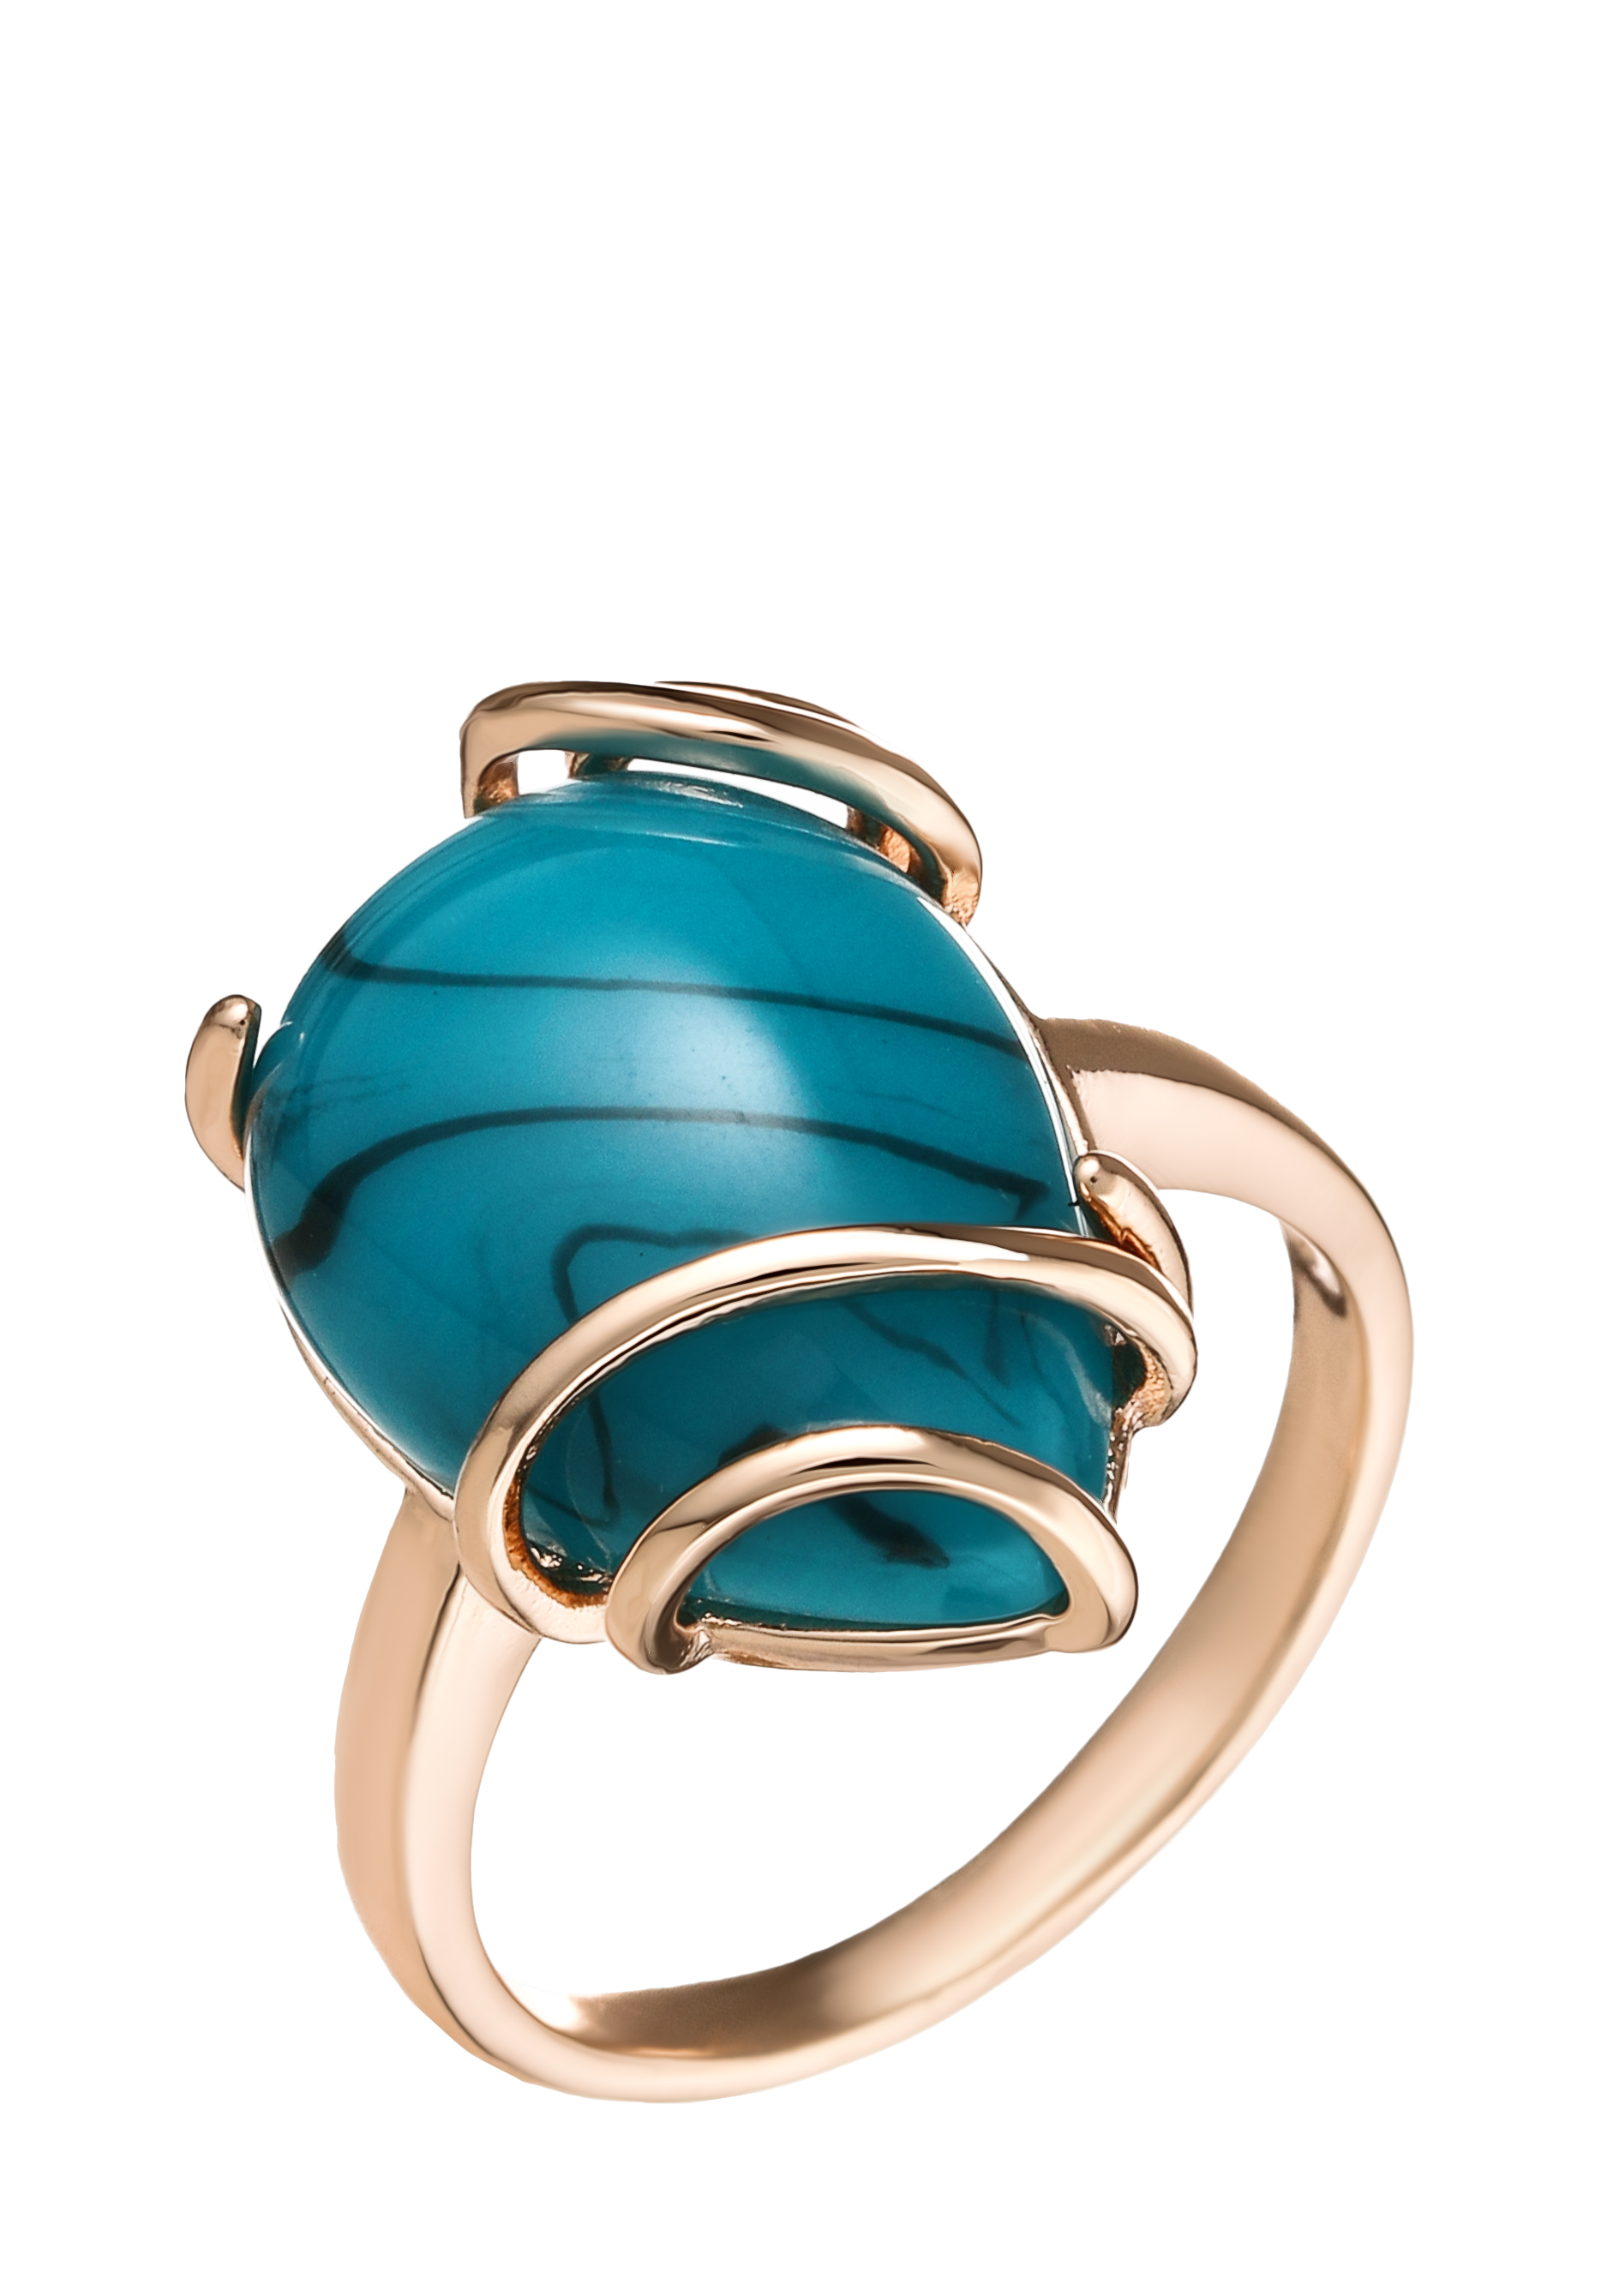 Комплект "Просторы океана" Бриллианит Натюр, цвет голубой, размер 19 перстень - фото 6